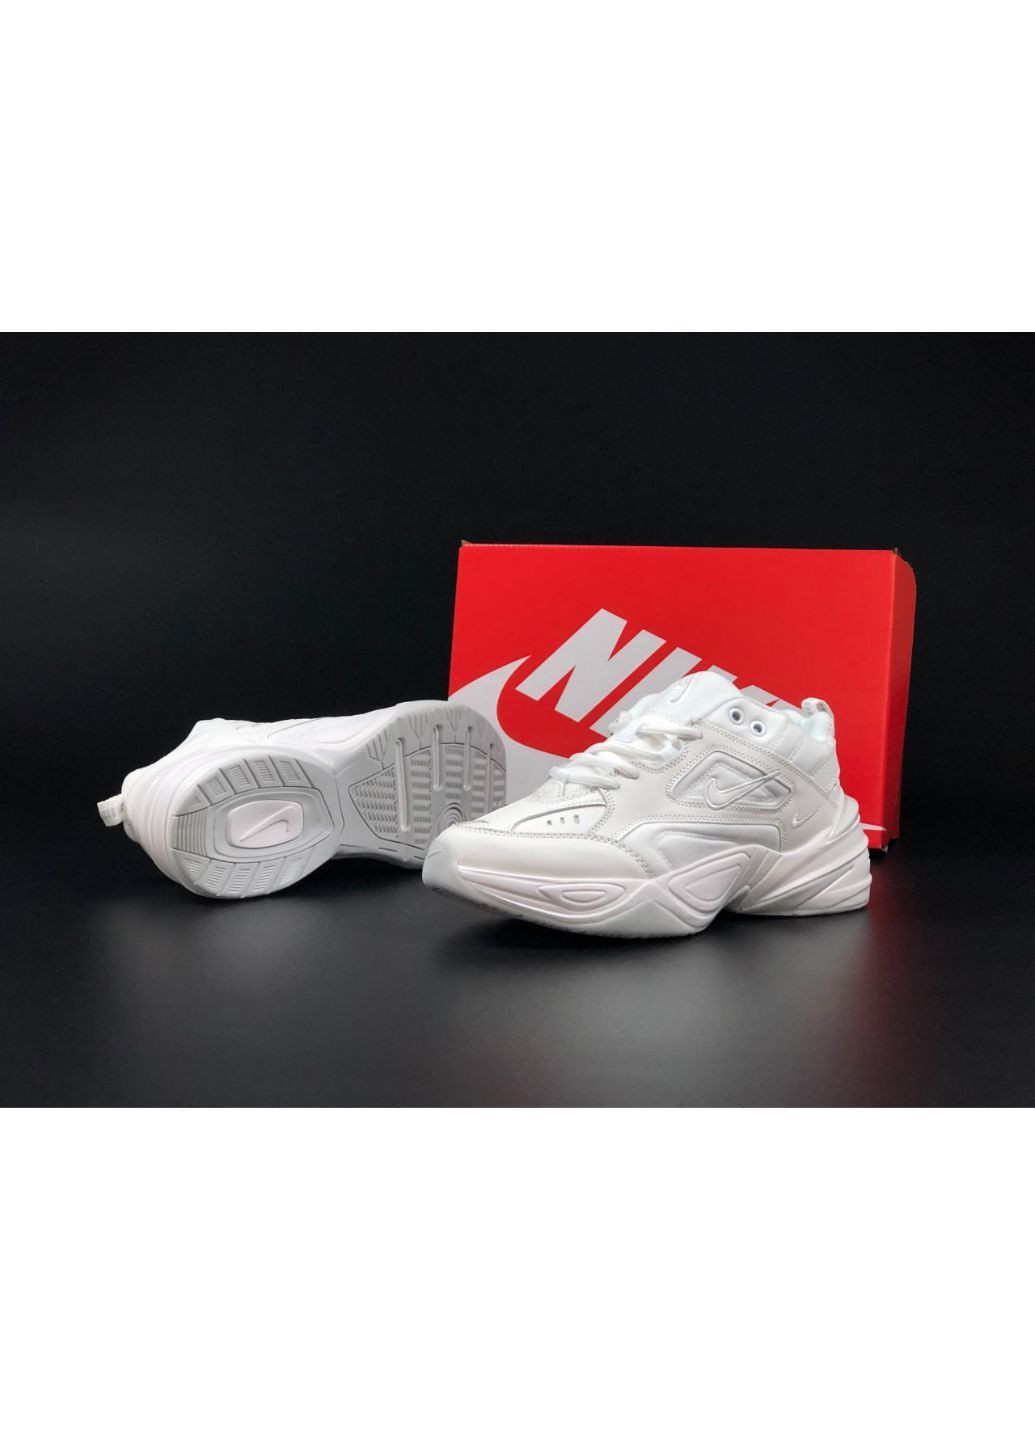 Білі Осінні чоловічі кросівки білі «no name» Nike M2k Tekno